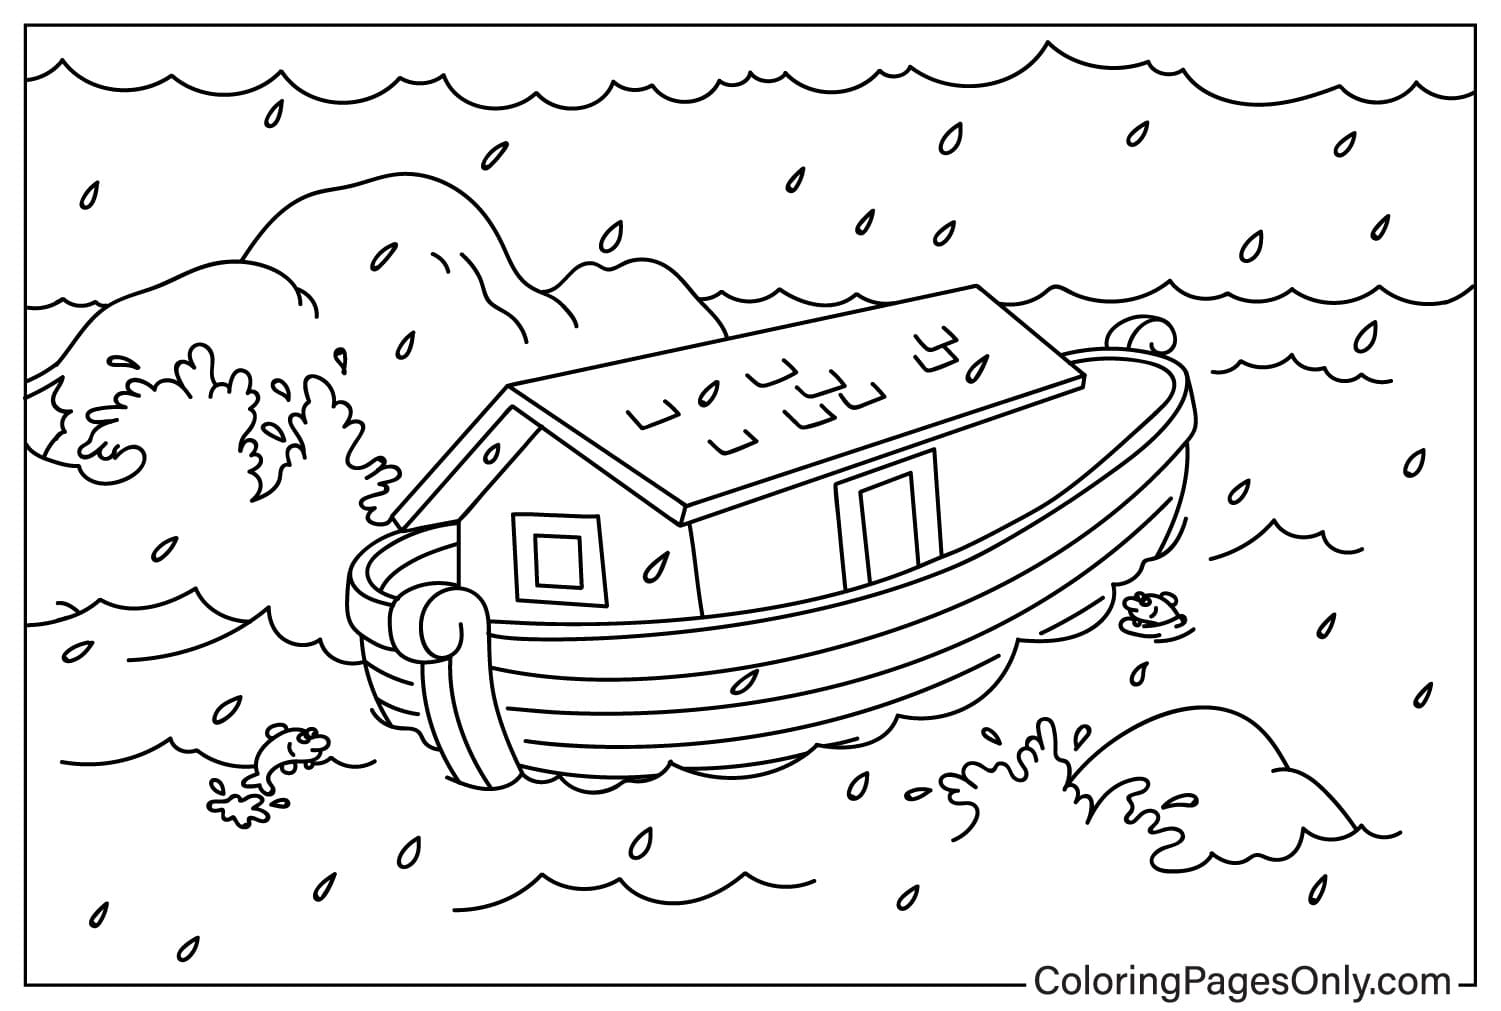 Página para colorear del Arca de Noé en el mar de El Arca de Noé